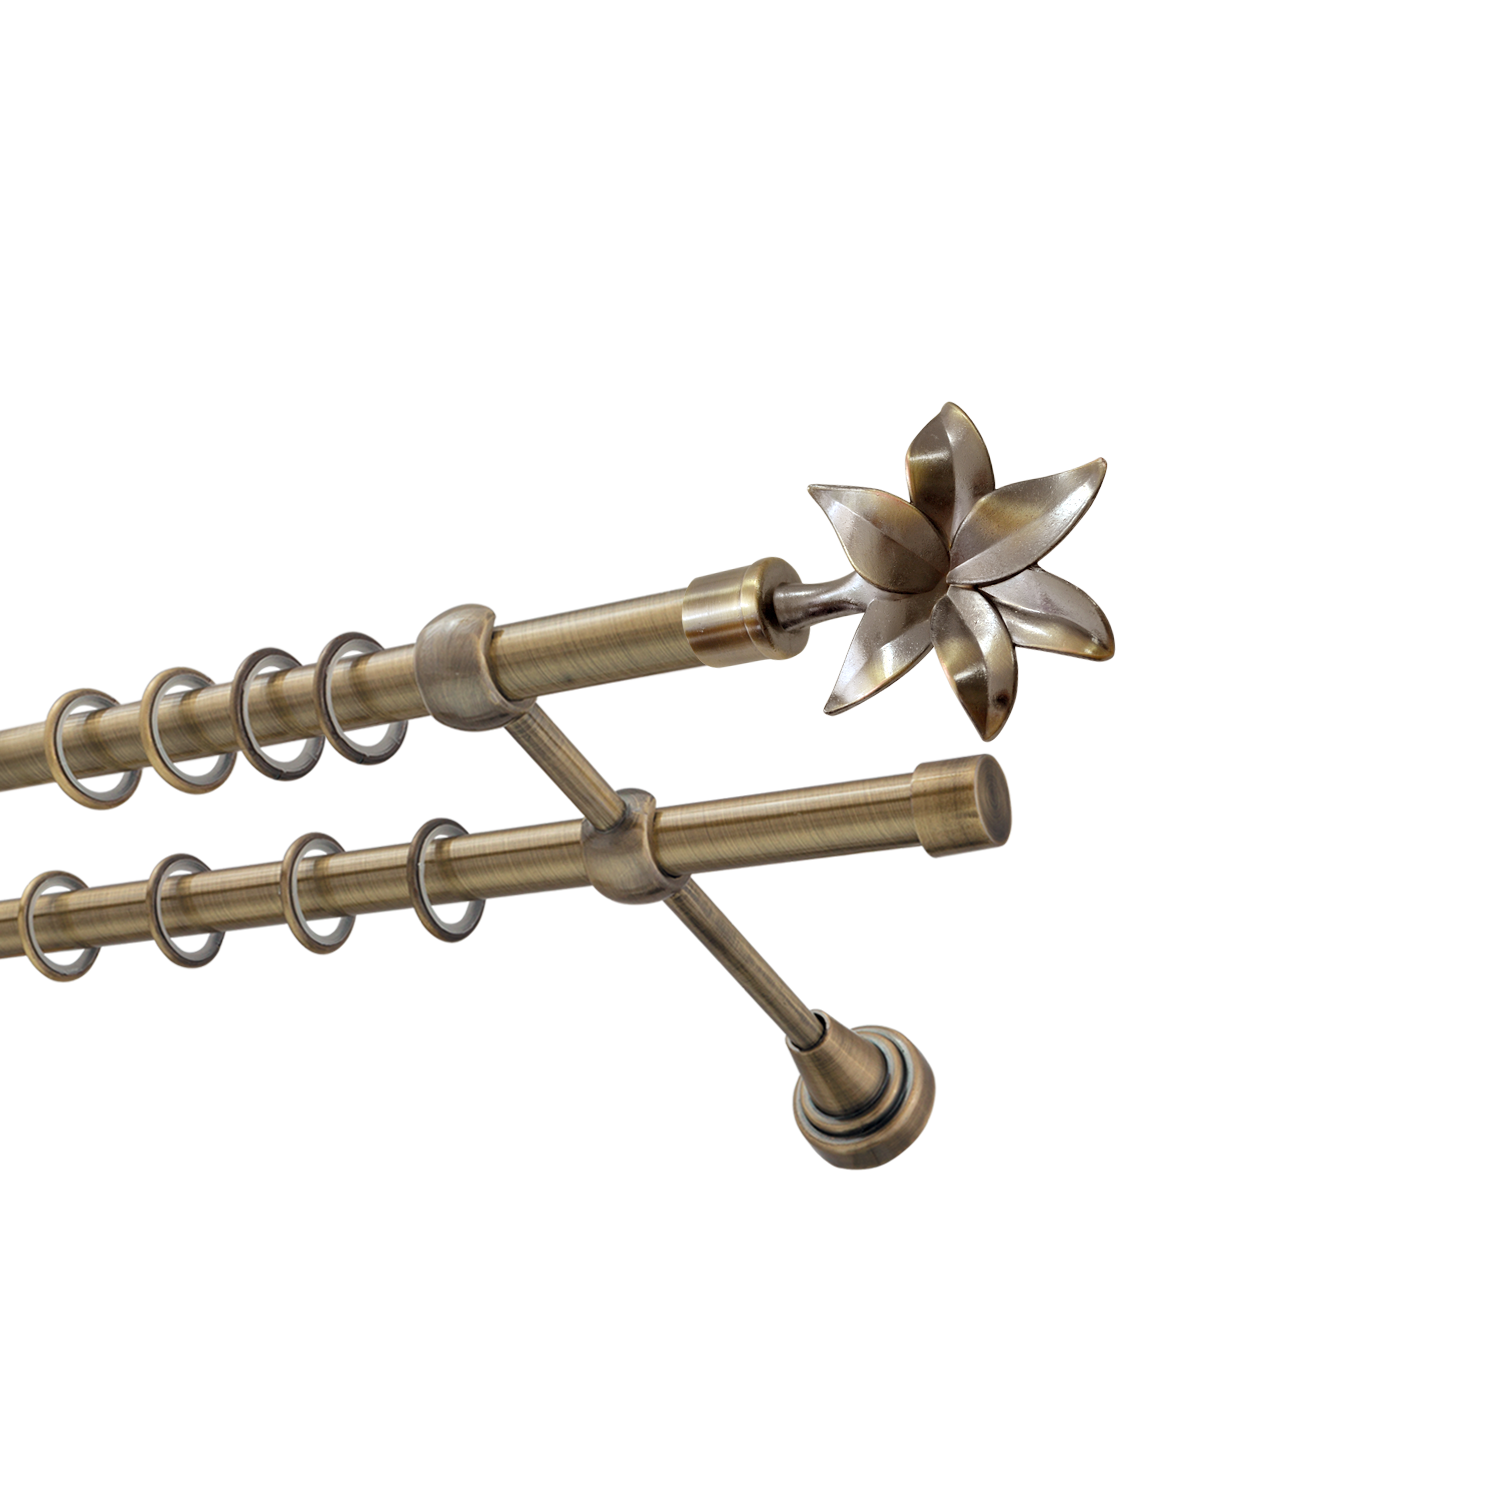 Металлический карниз для штор Магнолия, двухрядный 16/16 мм, бронза, гладкая штанга, длина 180 см - фото Wikidecor.ru